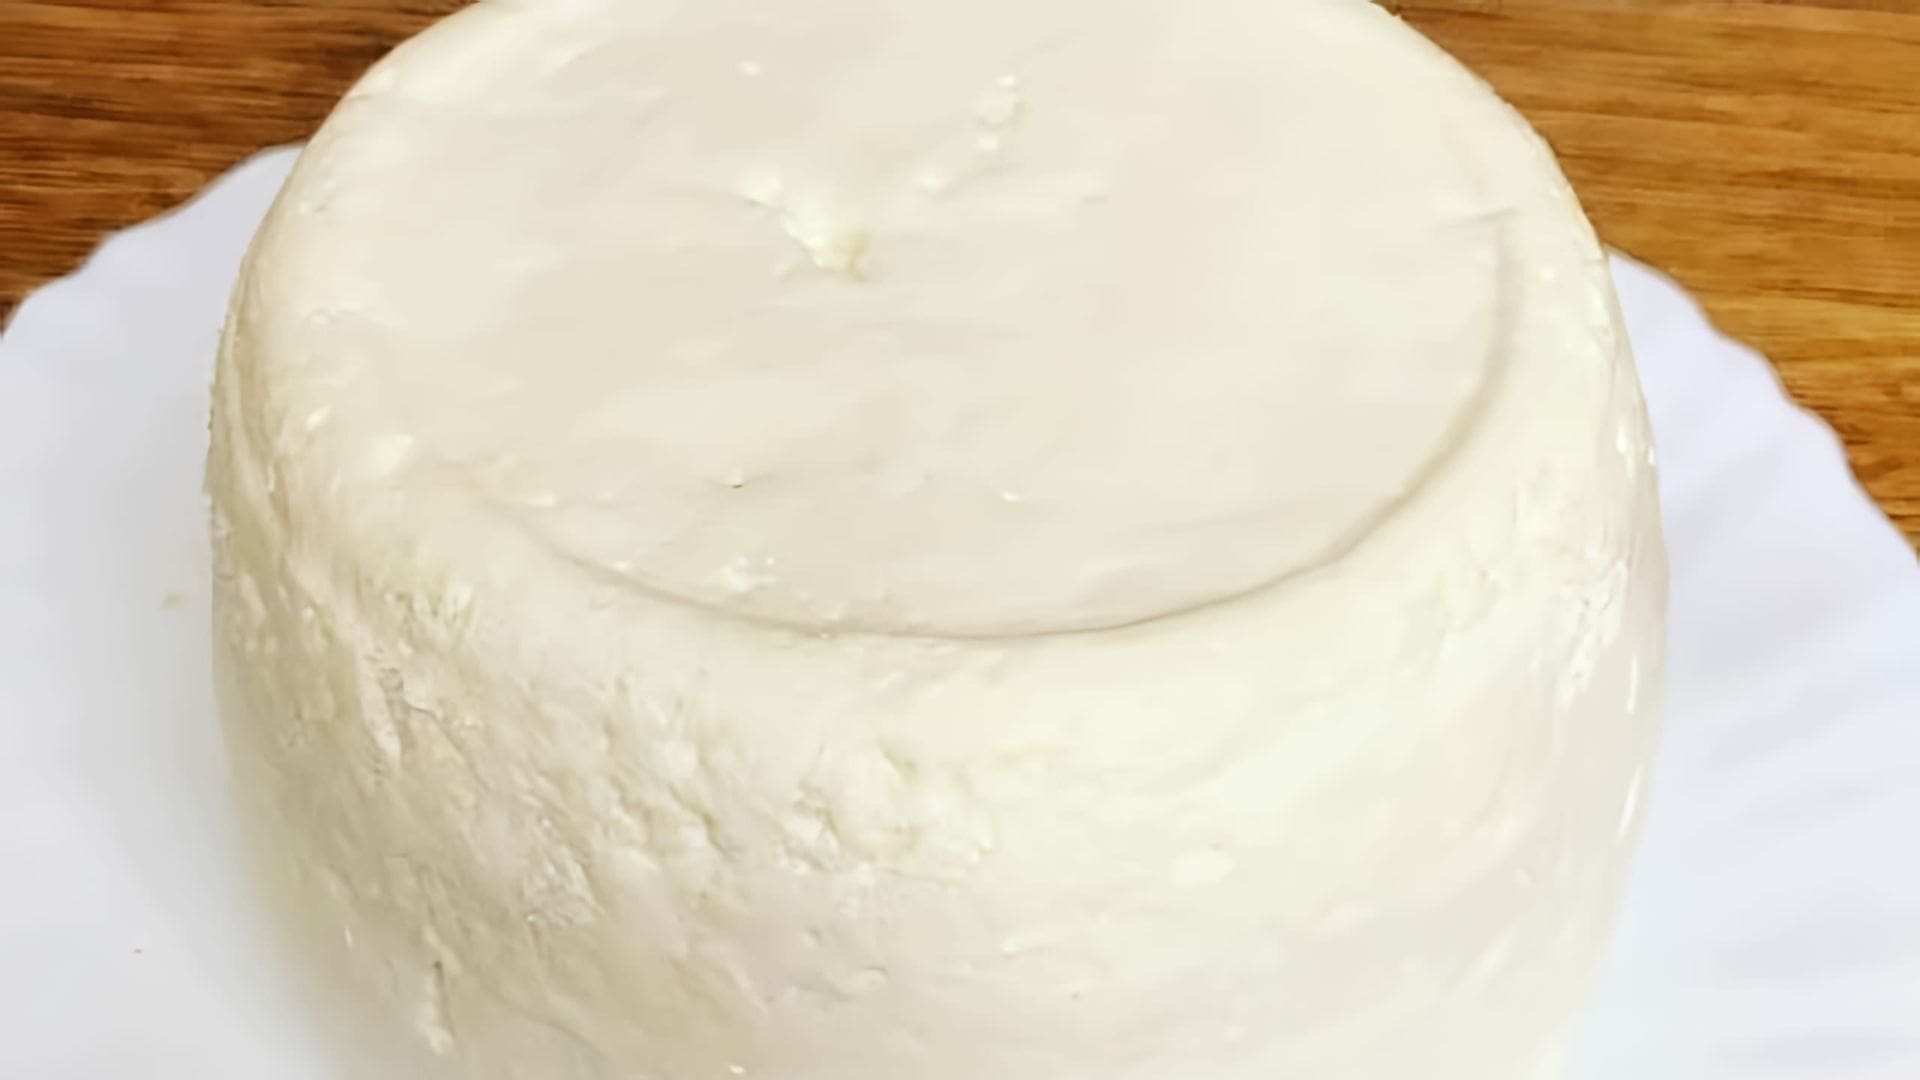 Видео как приготовить адыгейский сыр дома, используя только два ингредиента - обычное молоко и кефир